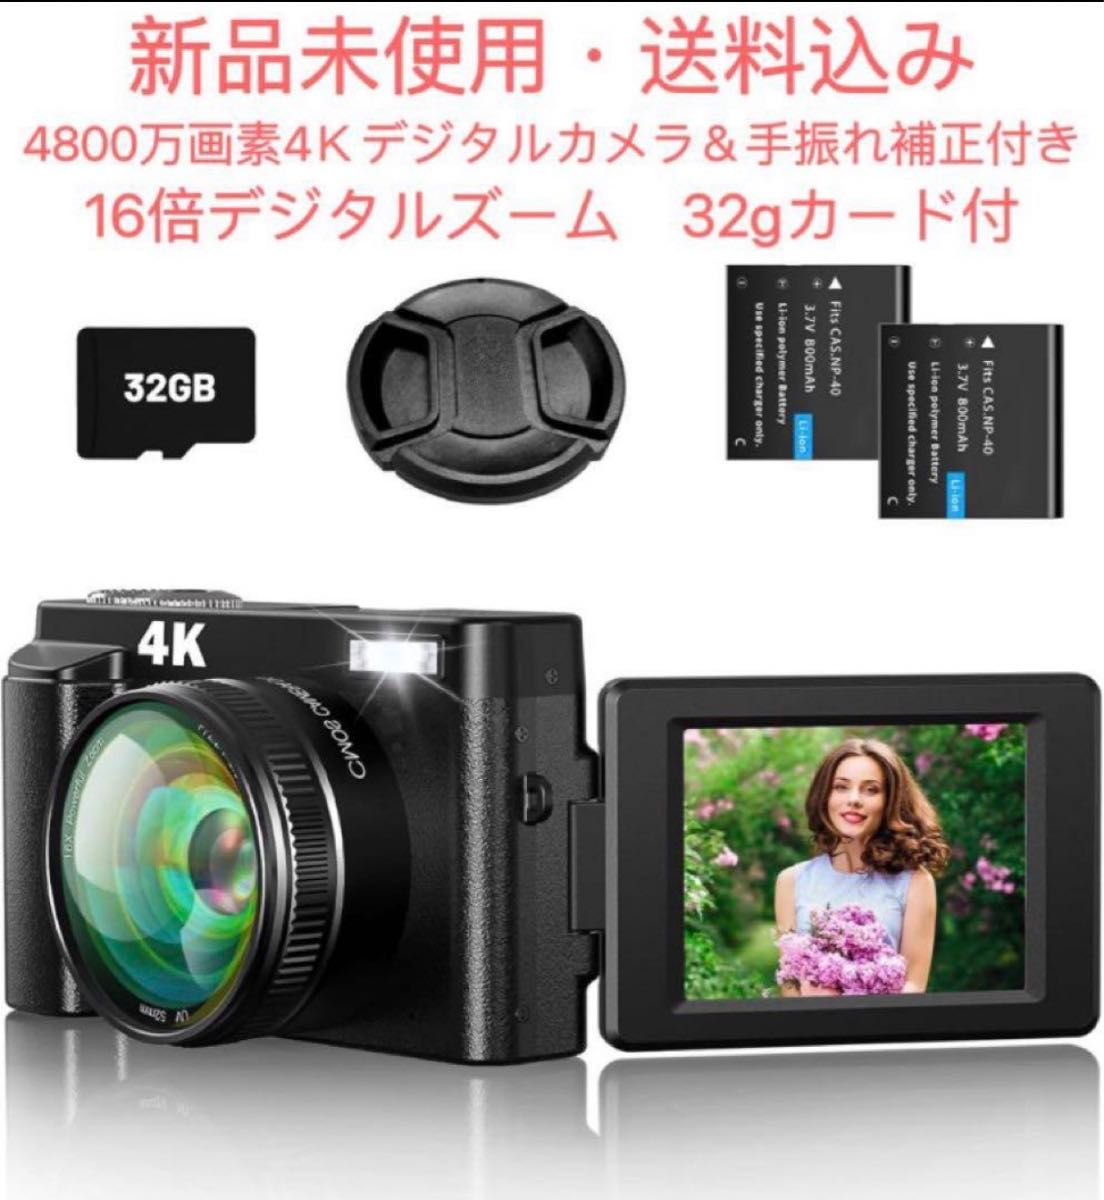 デジタルカメラ4K 4800万フラッシュ 180度回転スクリーン32gカード付